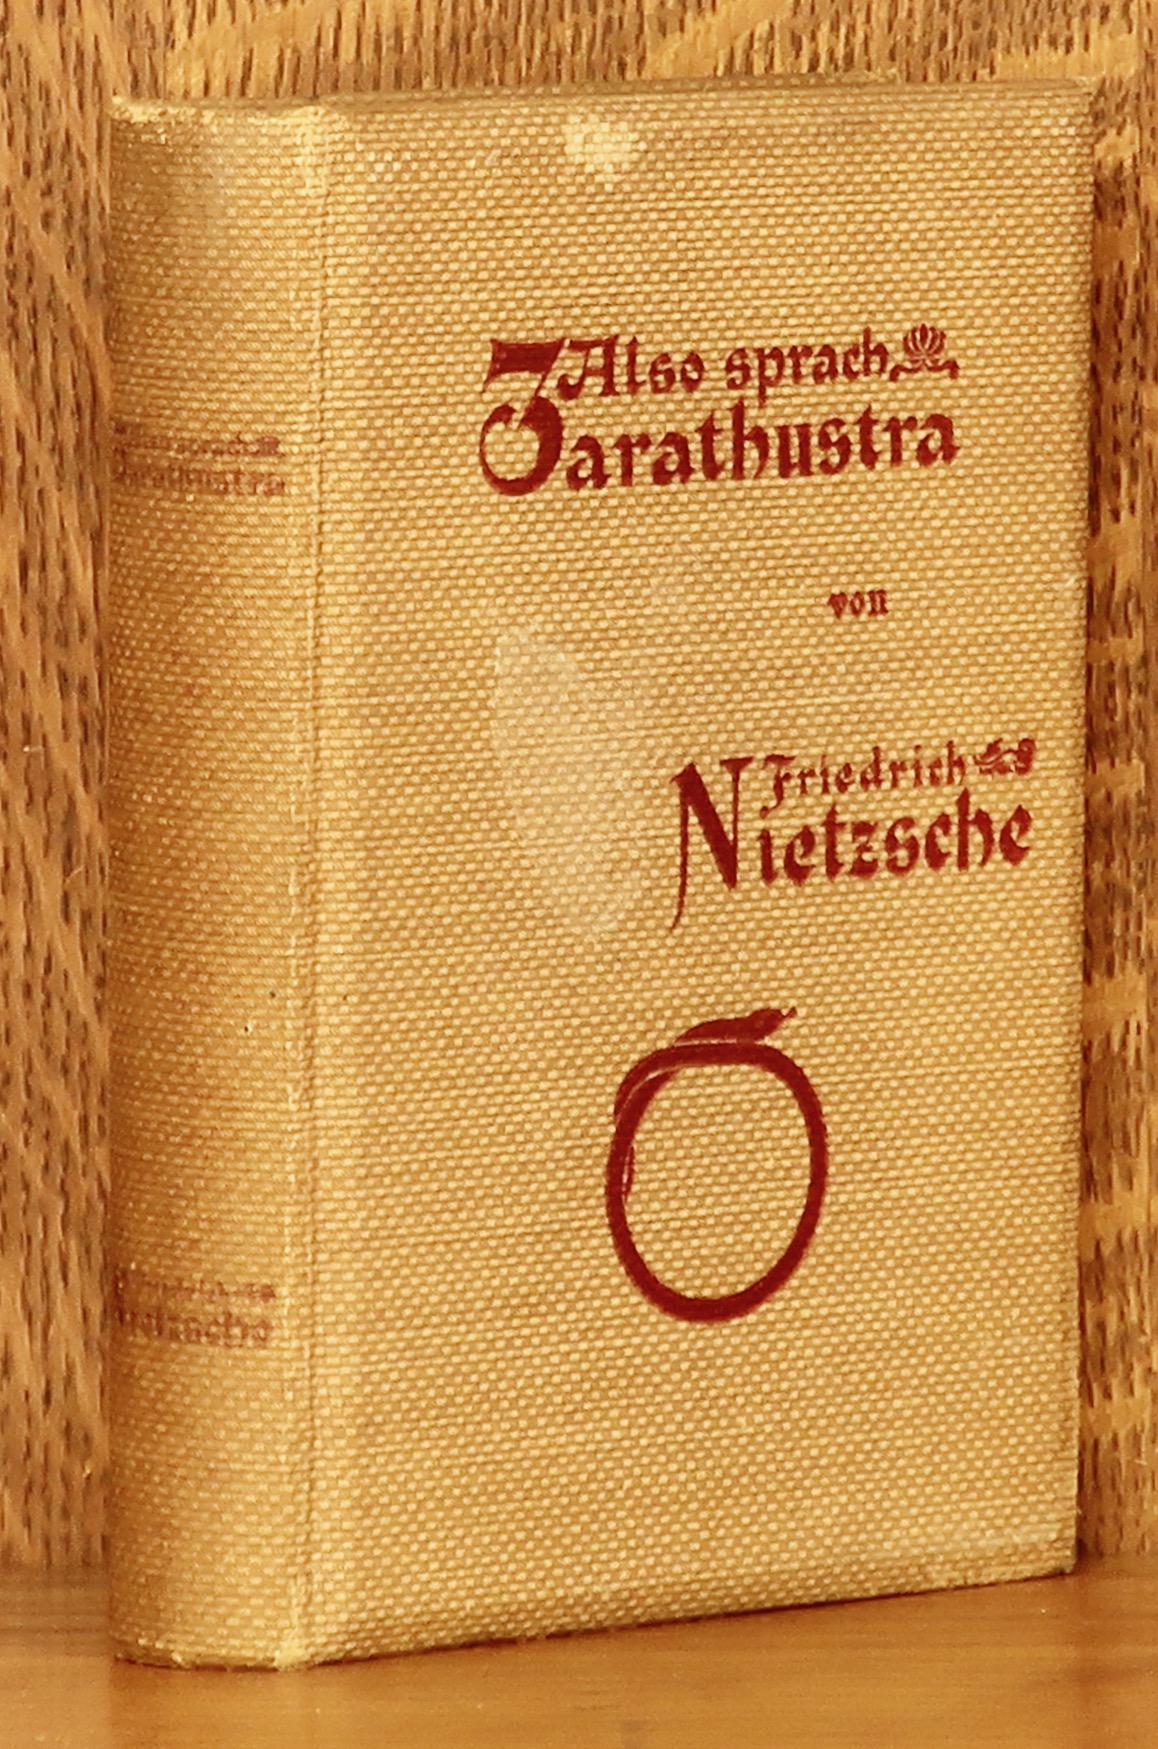 ALSO SPRACH ZARATHUSTRA - Friedrich Nietzsche